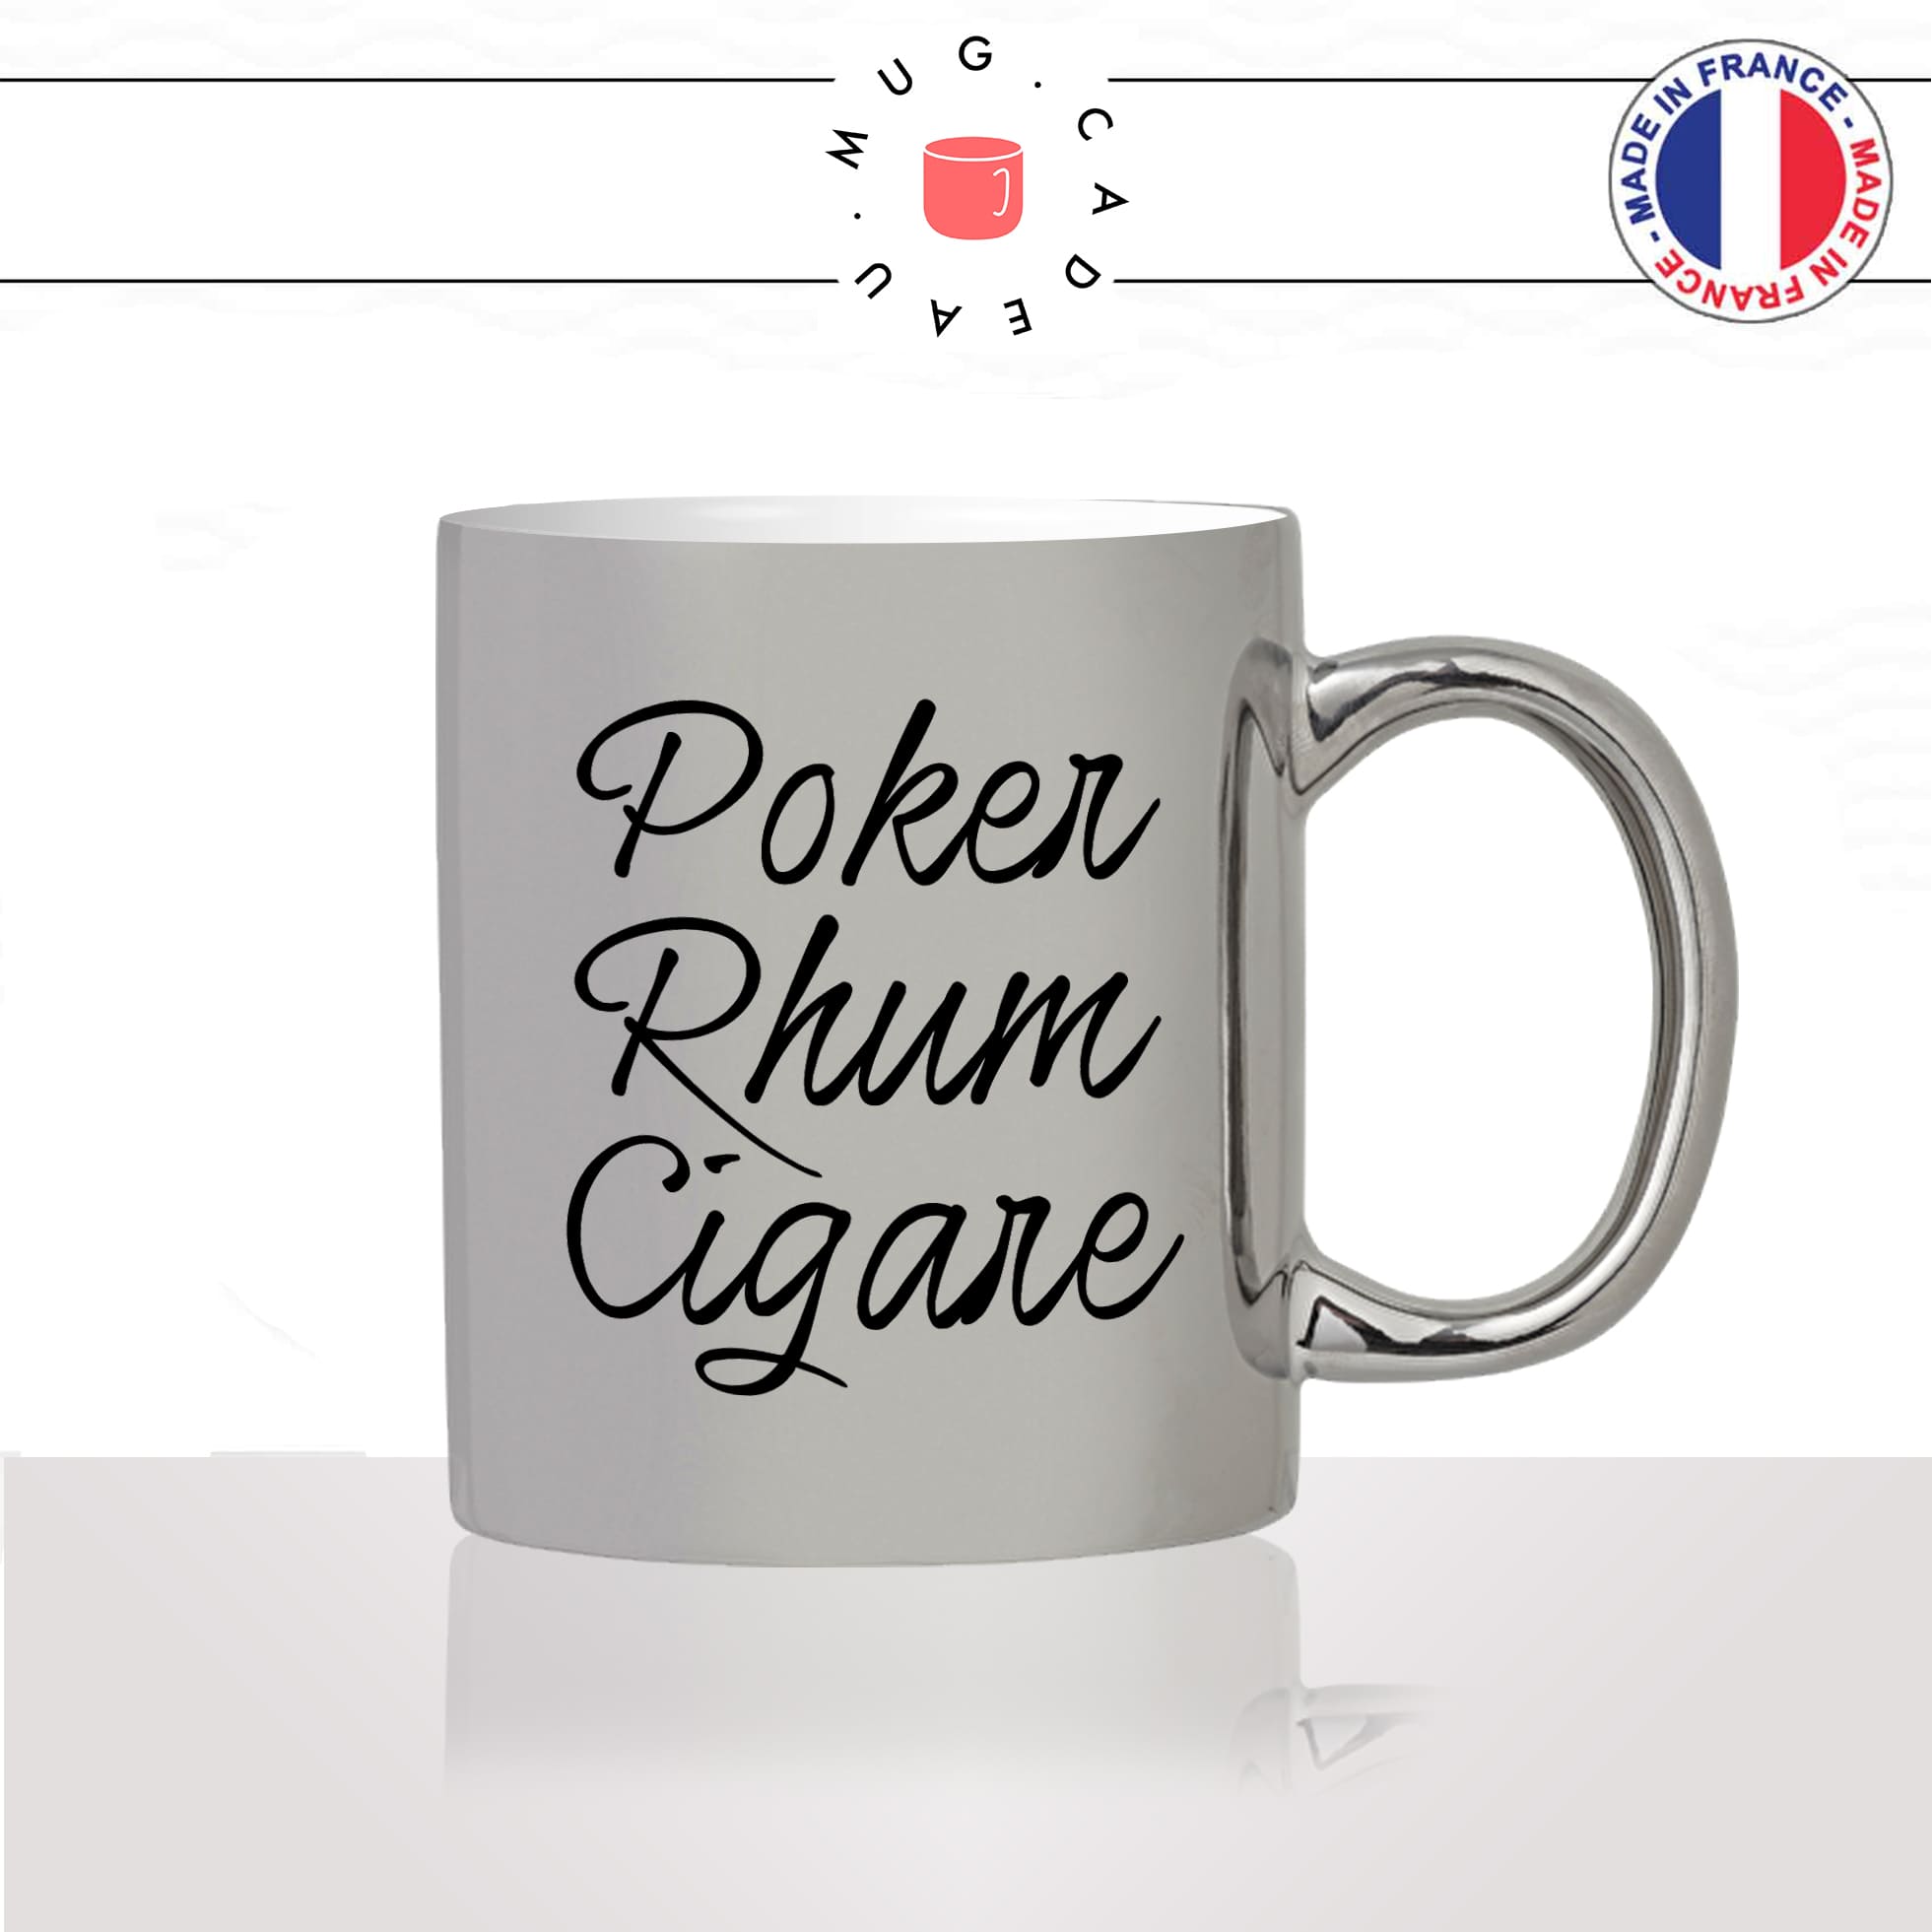 mug-tasse-argenté-argent-gris-silver-poker-rhum-cigare-bonhomme-mec-homme-cubain-bluff-humour-fun-cool-idée-cadeau-original-personnalisé20